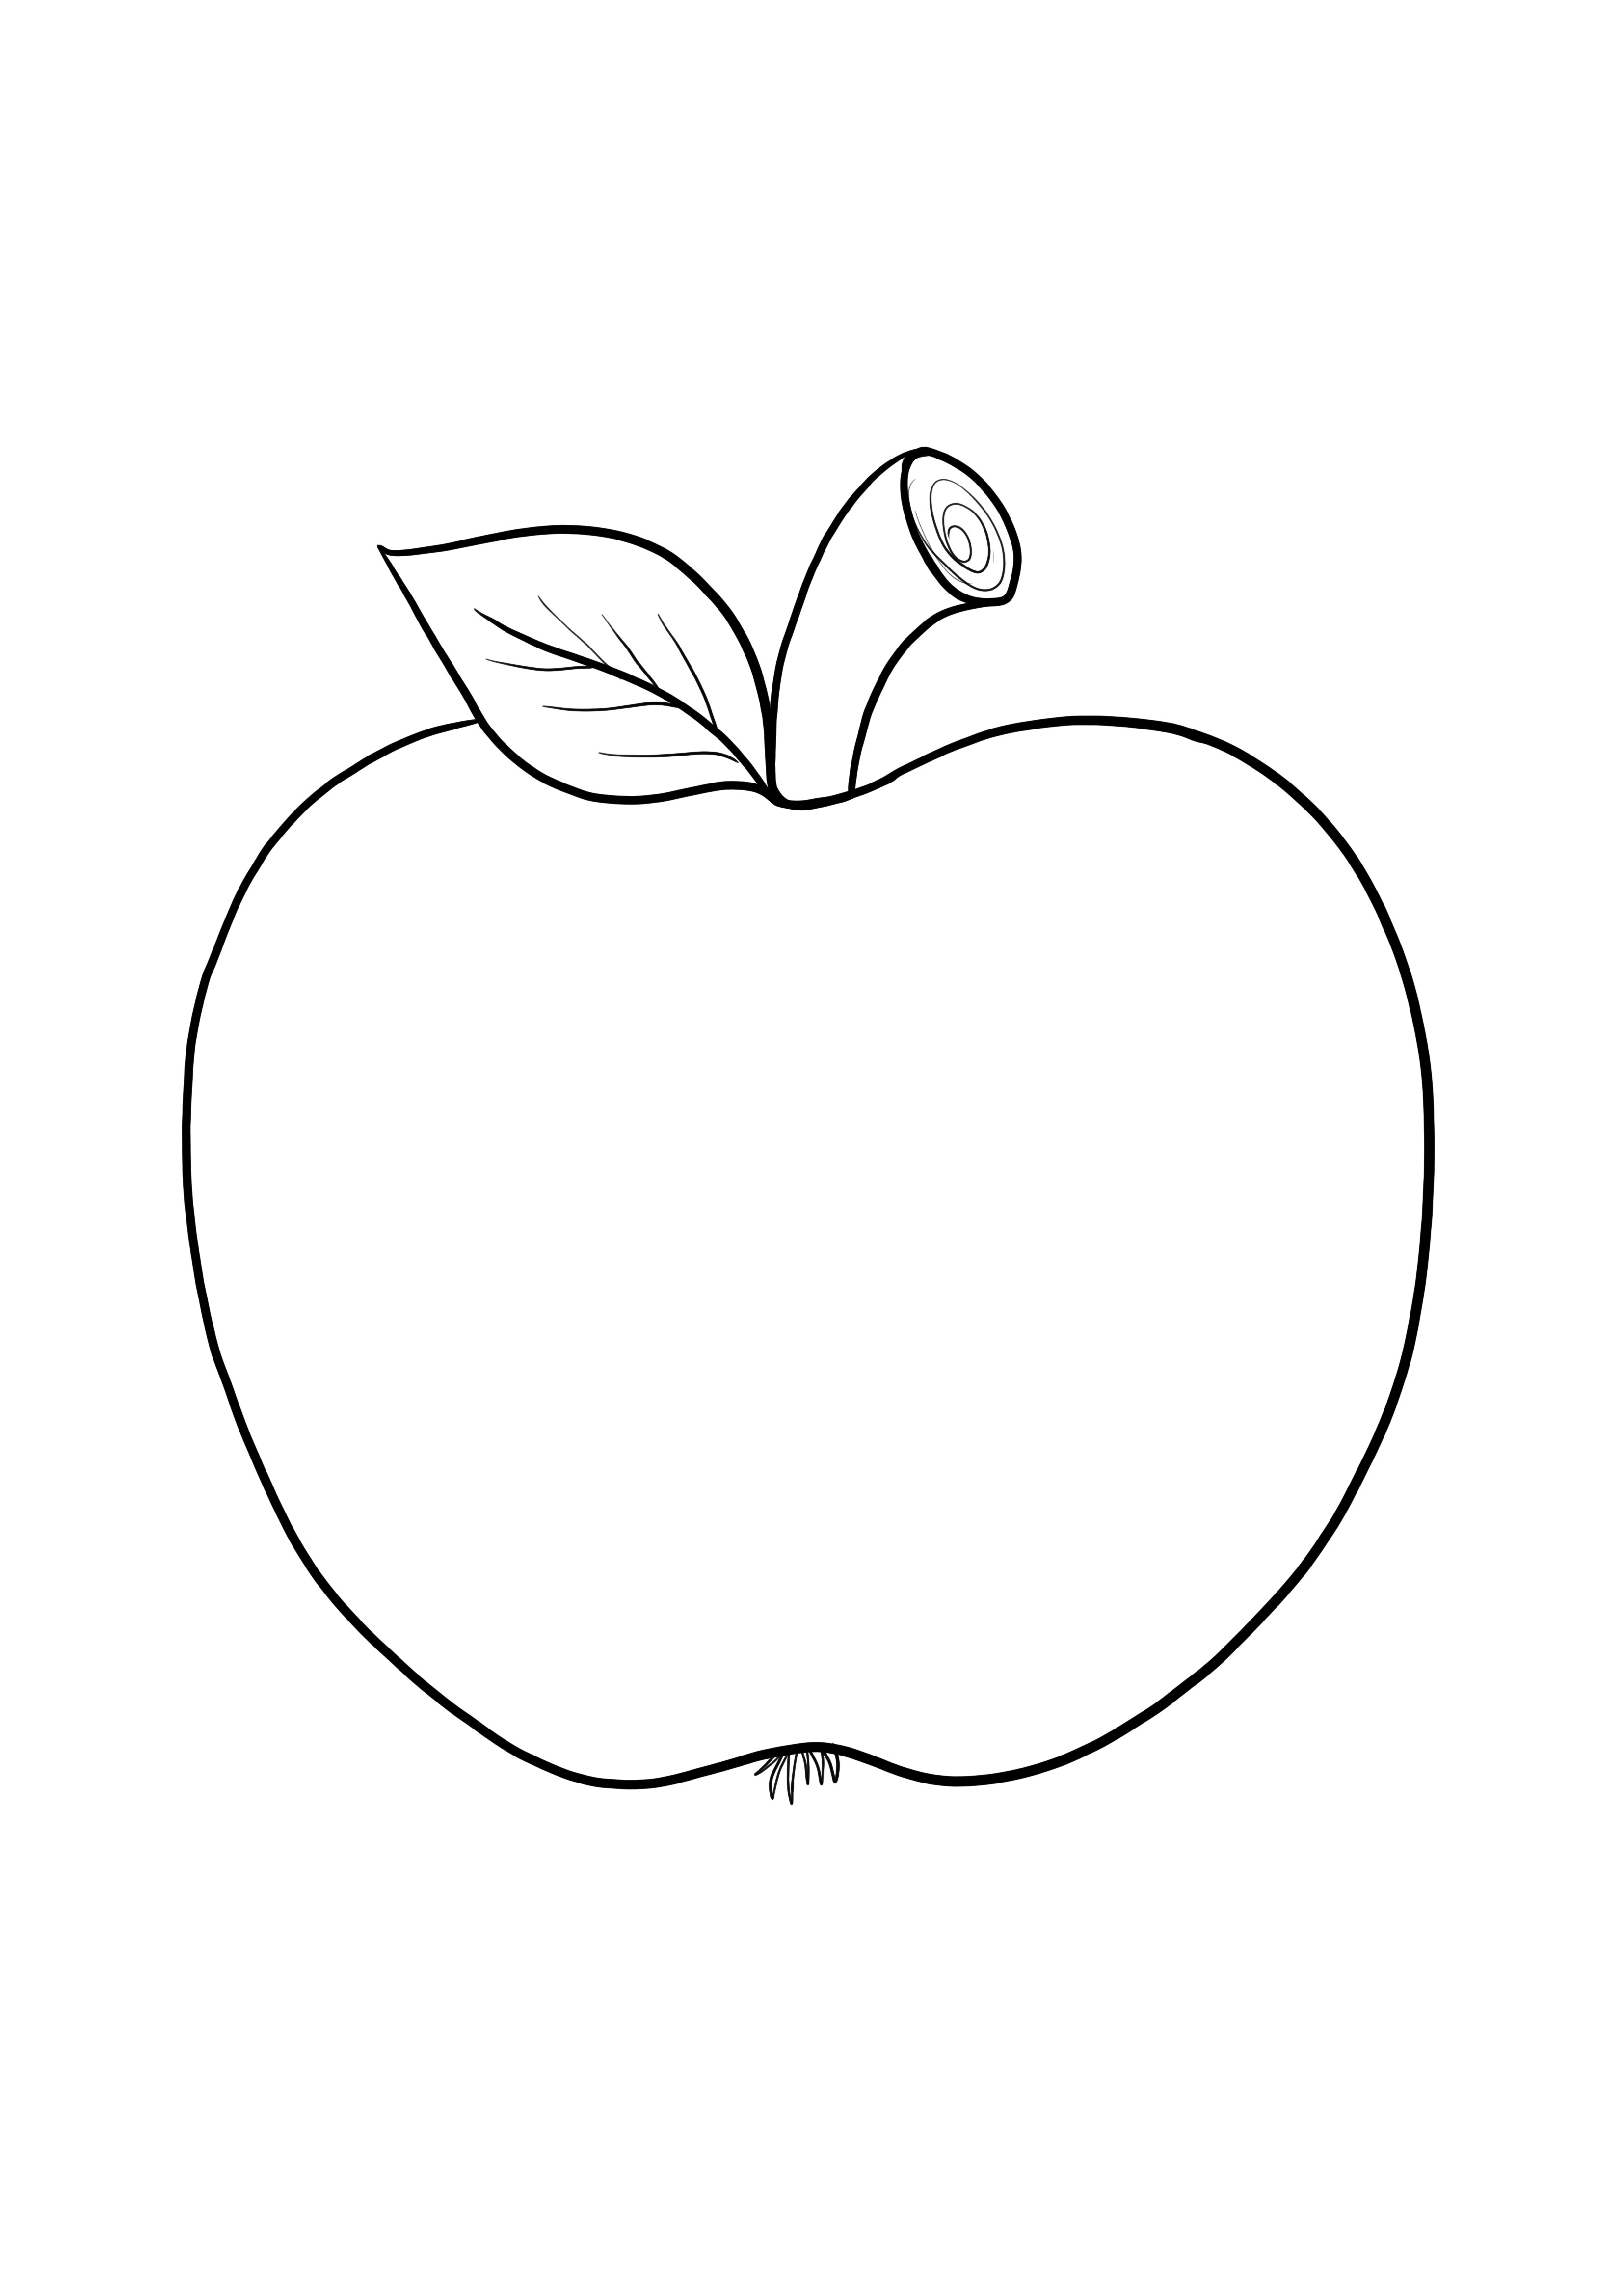 Çocuklar için ücretsiz yazdırmak için kolay boyama için basit boş elma resmi